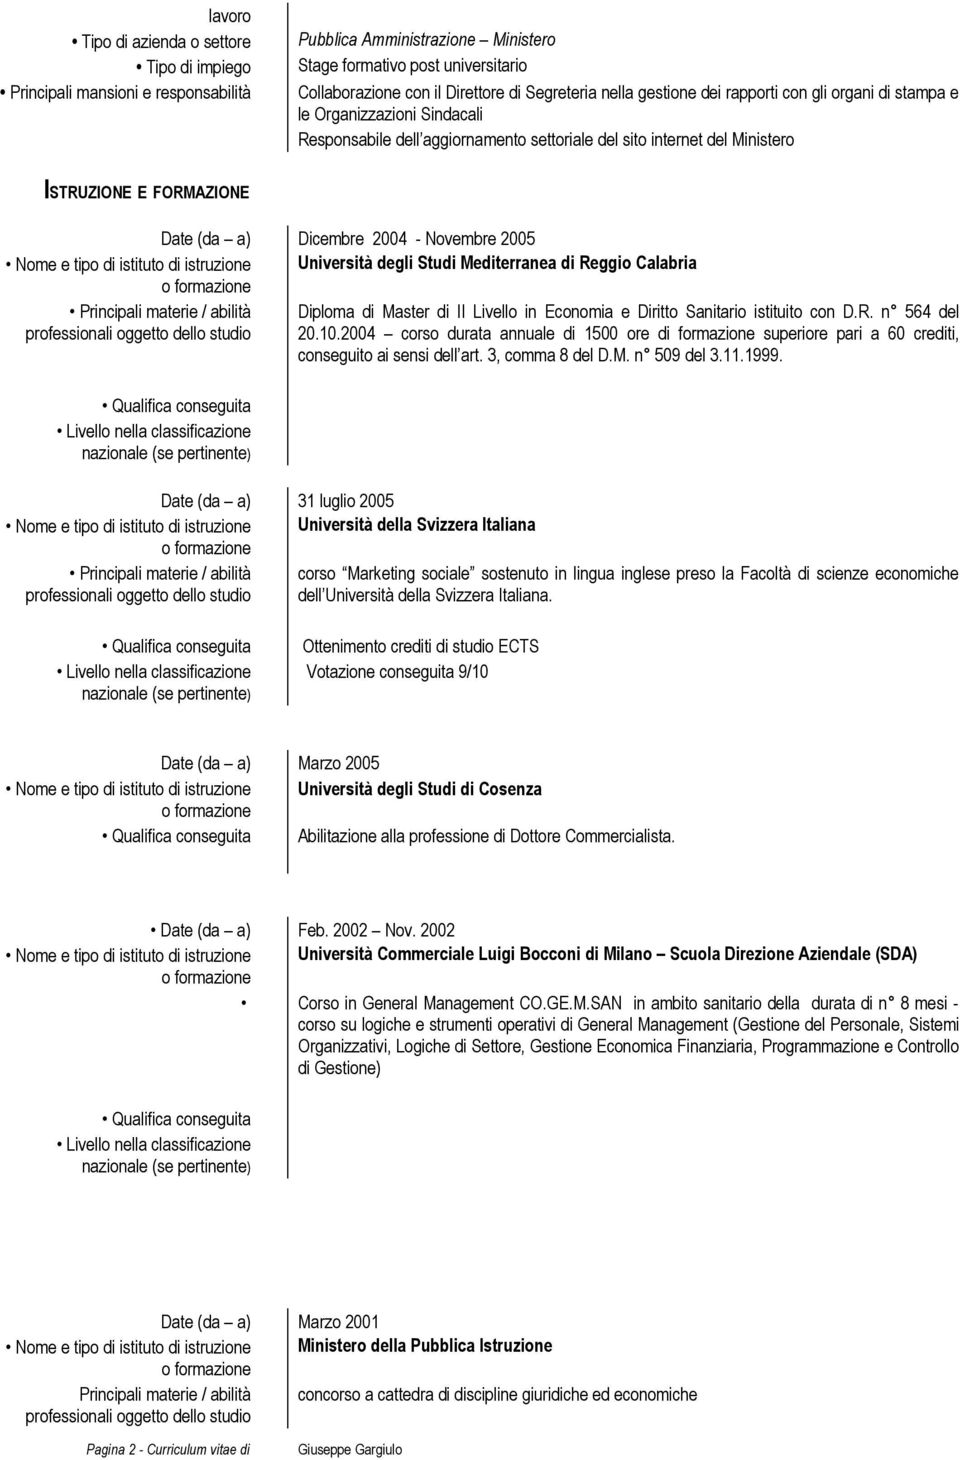 Dicembre 2004 - Novembre 2005 Nome e tipo di istituto di istruzione Università degli Studi Mediterranea di Reggio Calabria Principali materie / abilità Diploma di Master di II Livello in Economia e